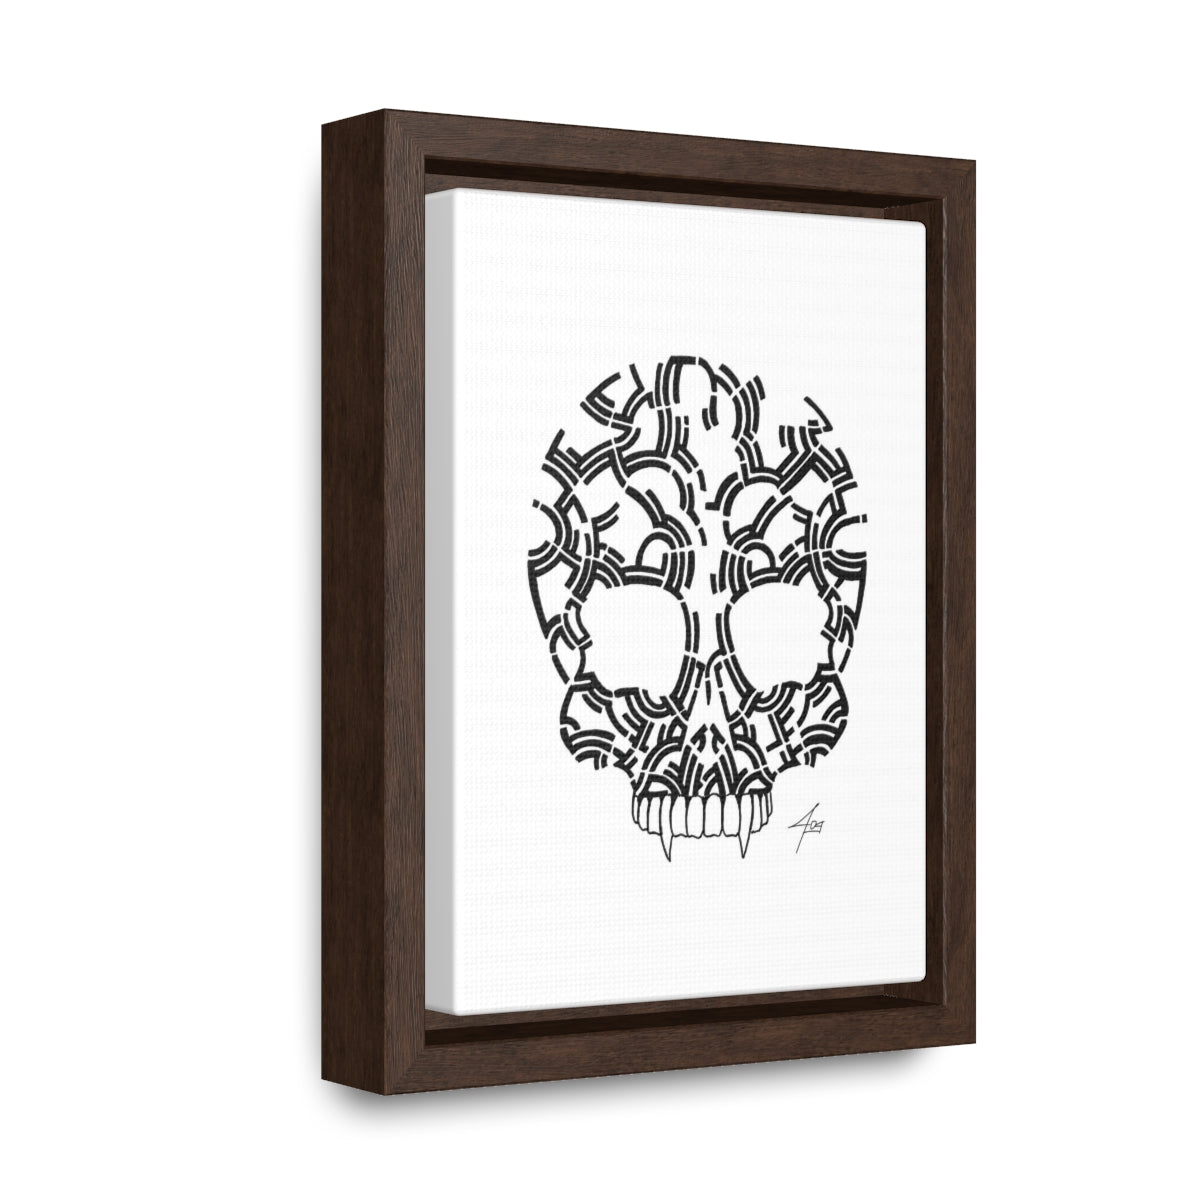 Black Line Skull Design Gallery Canvas Wraps, Vertical Frame